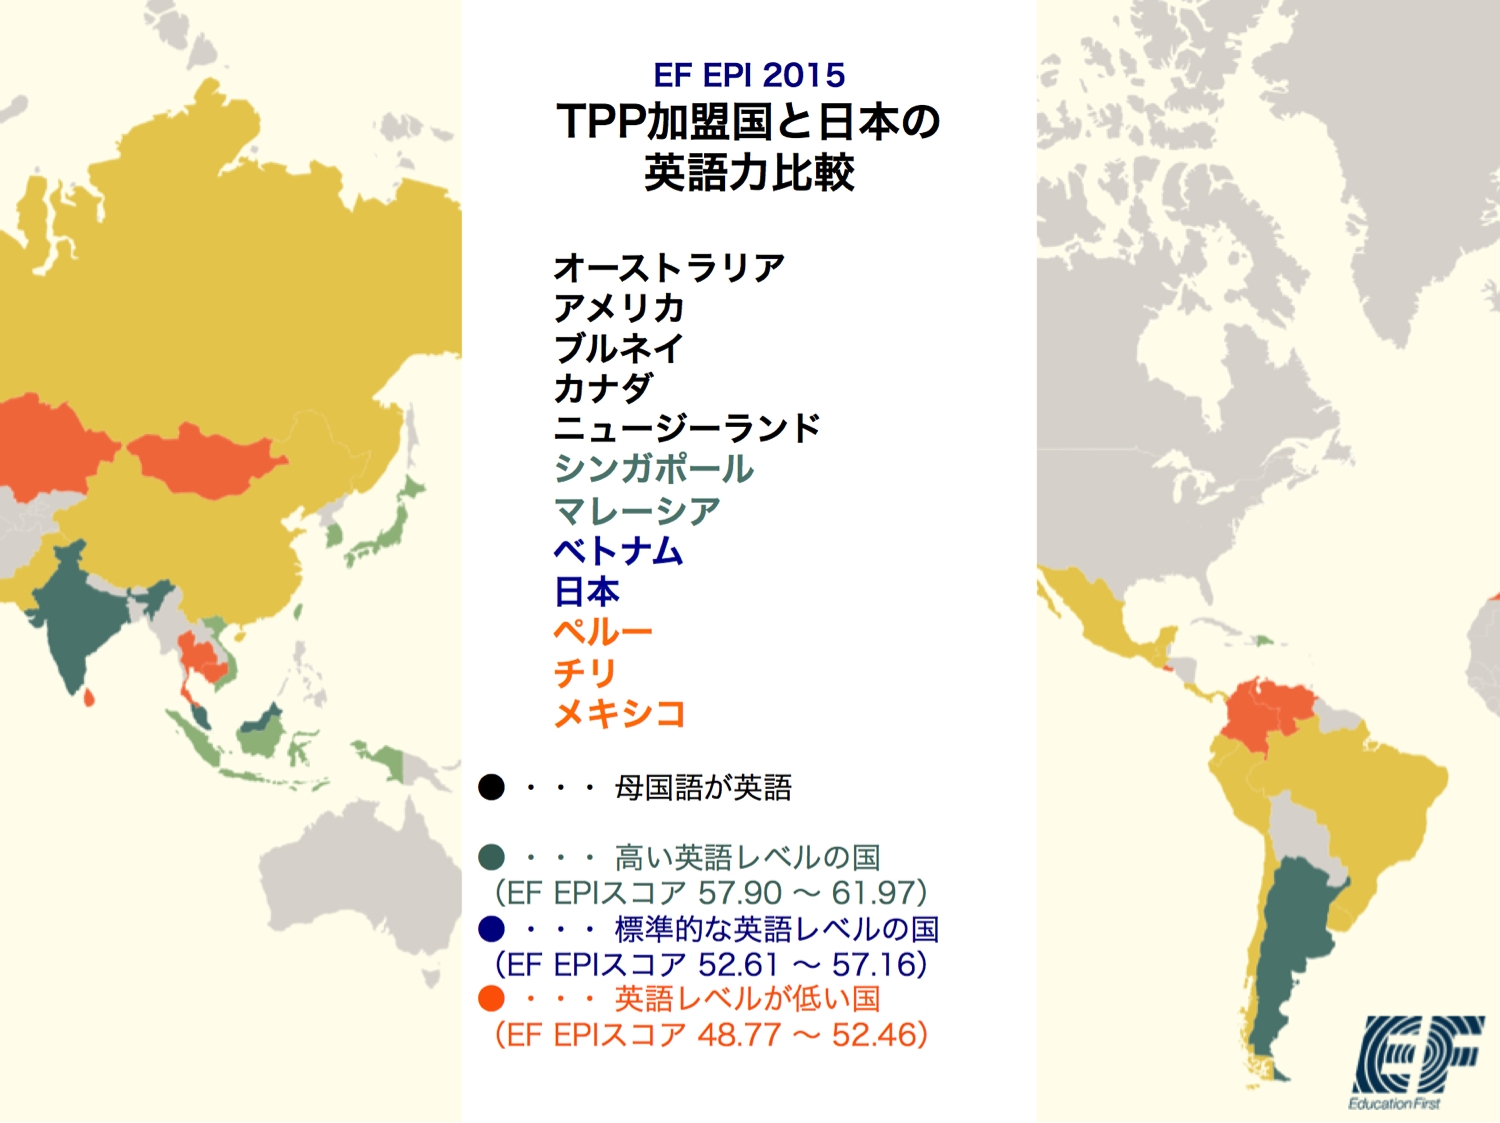 留学 語学教育事業のef Tpp加盟国 11カ国 と日本の英語力を比較 イー エフ エデュケーション ファースト ジャパン株式会社のプレスリリース